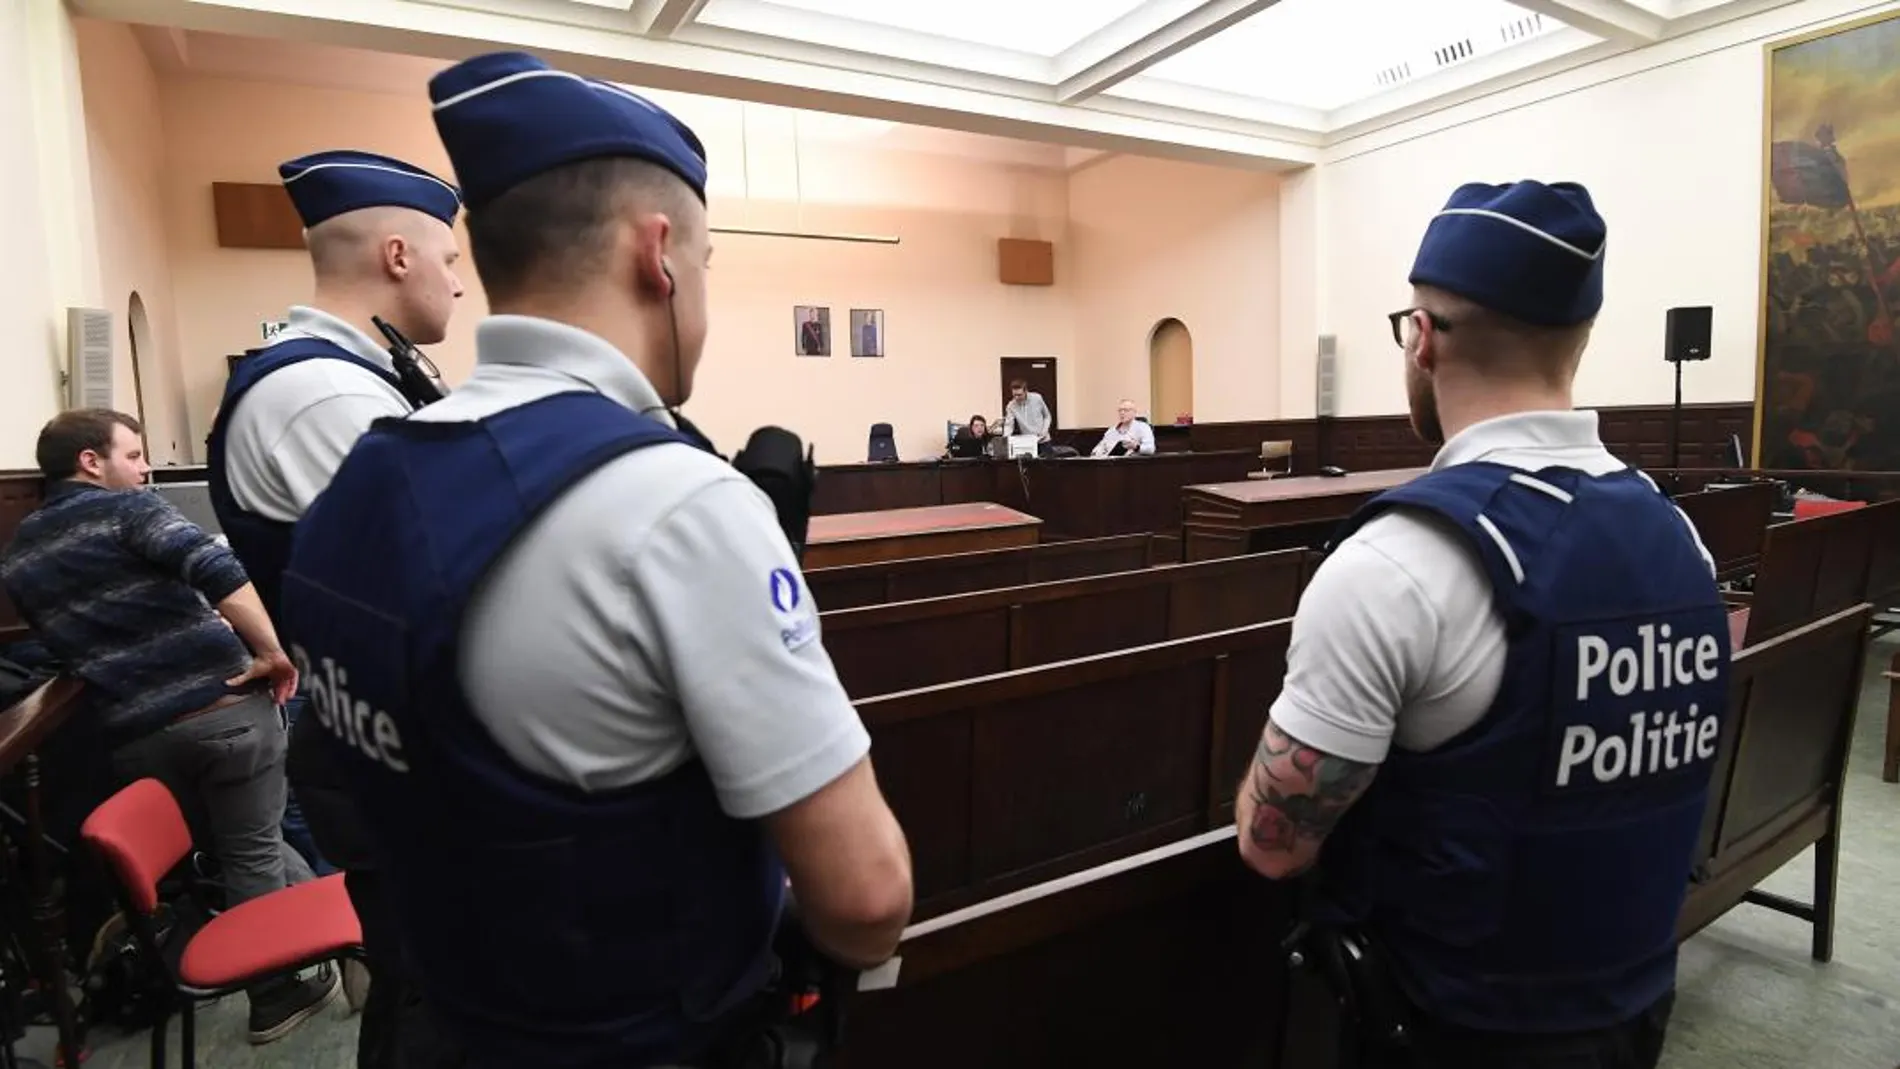 Vista general de la sala del Palacio de Justicia de Bruselas donde se celebra el juicio contra los acusados de terrorismo Salah Abdeslam y Sofiane Ayari